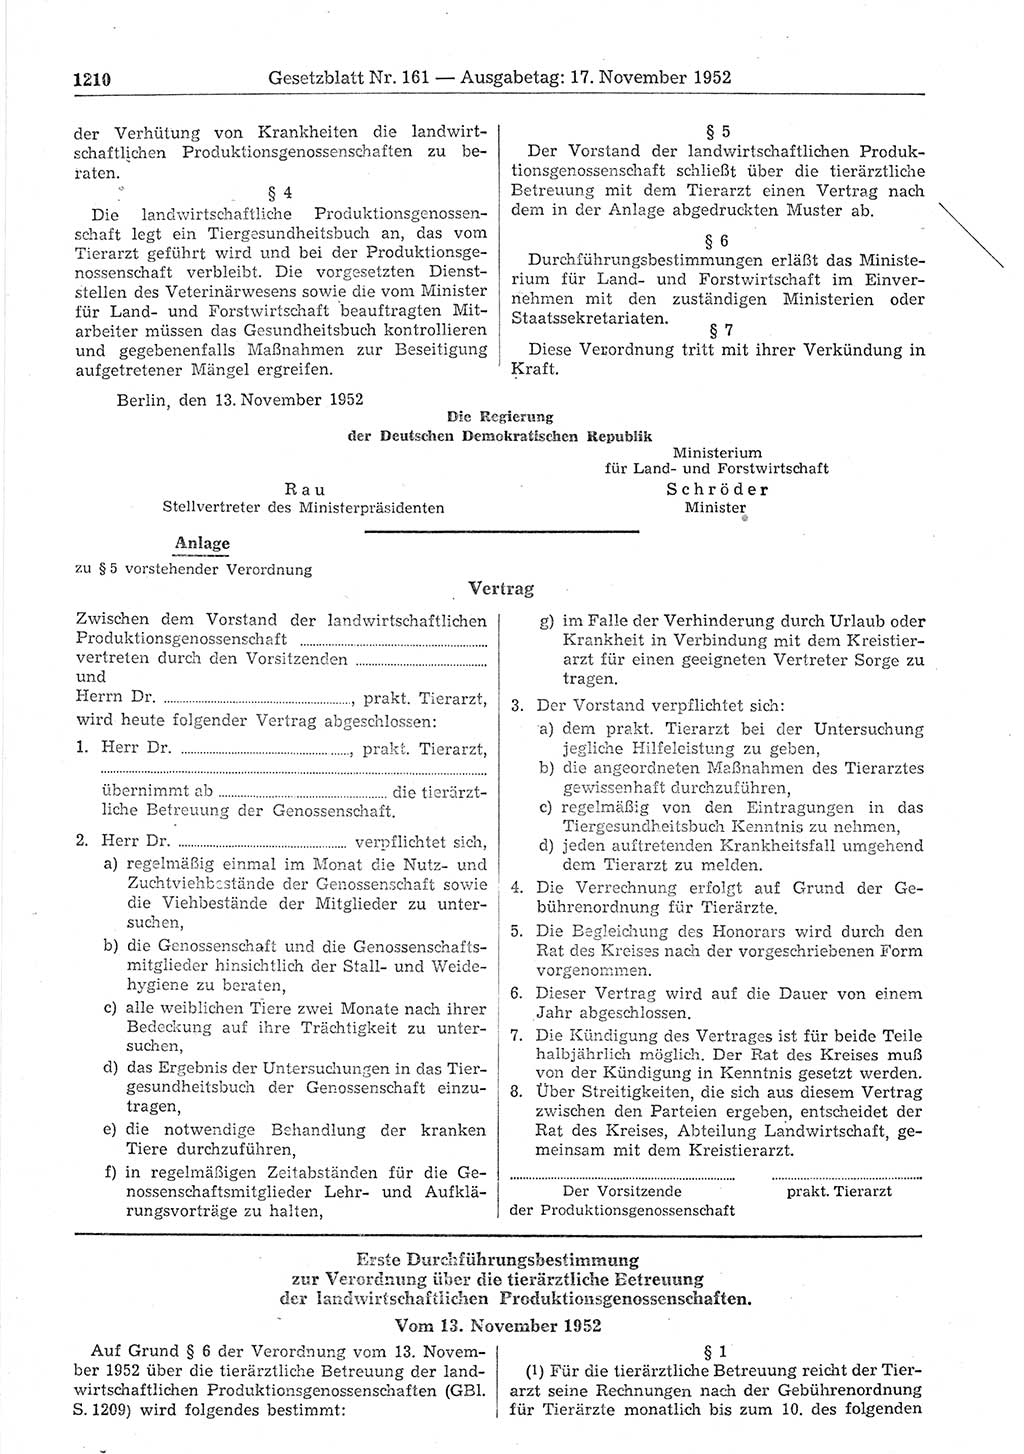 Gesetzblatt (GBl.) der Deutschen Demokratischen Republik (DDR) 1952, Seite 1210 (GBl. DDR 1952, S. 1210)